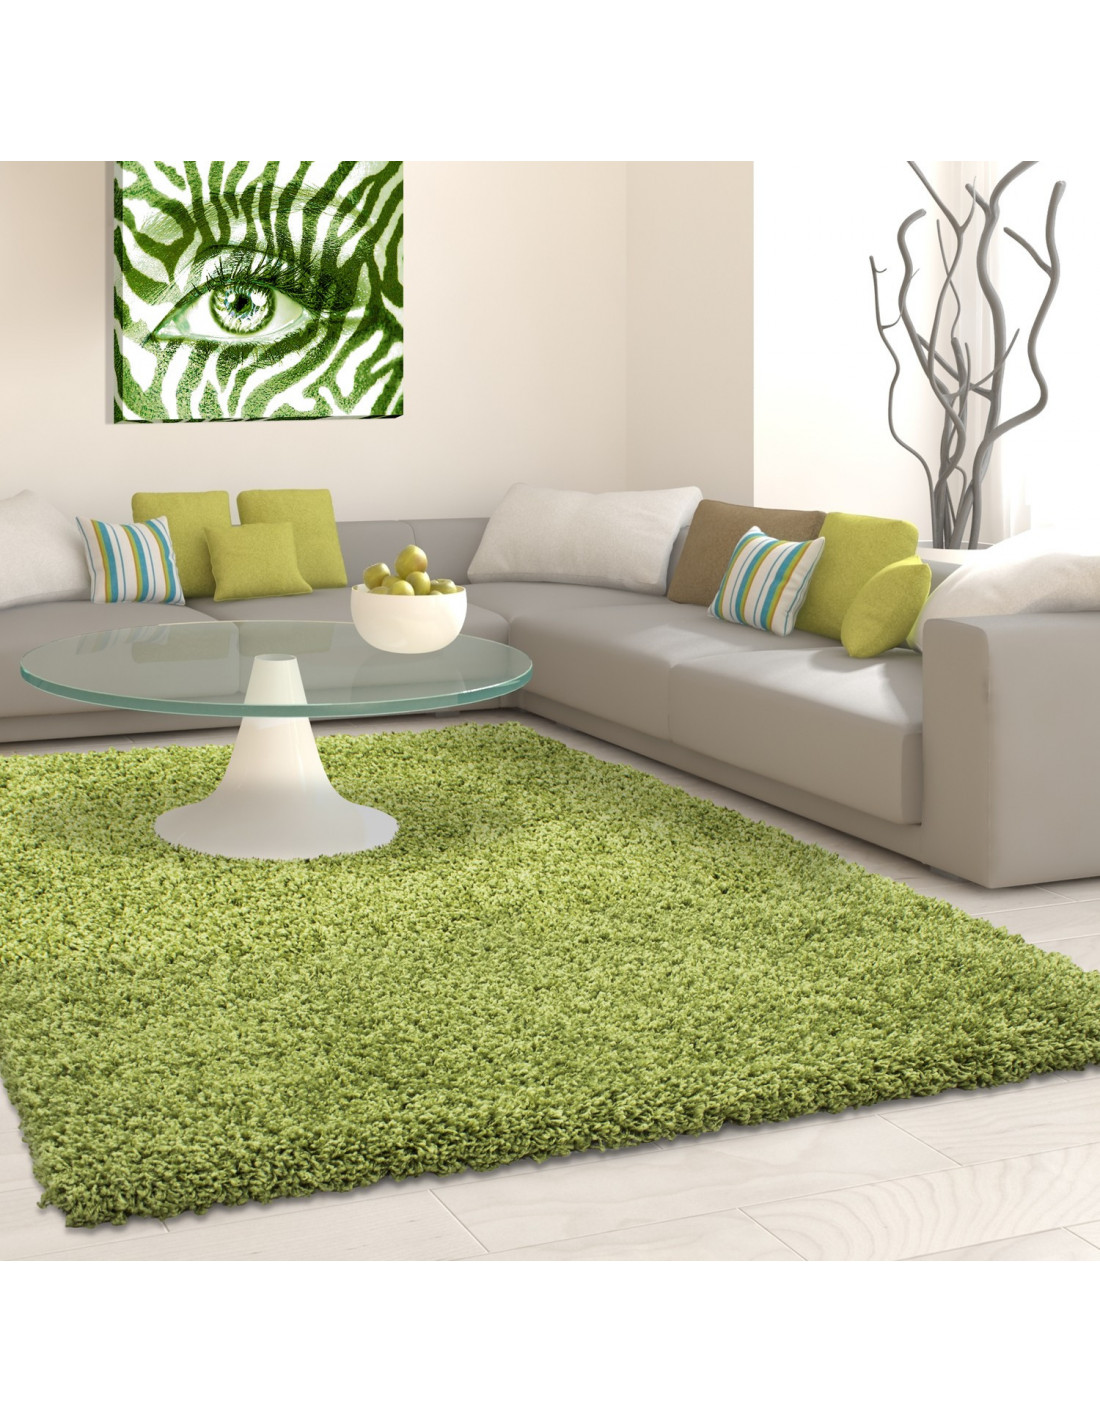 Shaggy pile living room rug, Shaggy pile height 3cm slim